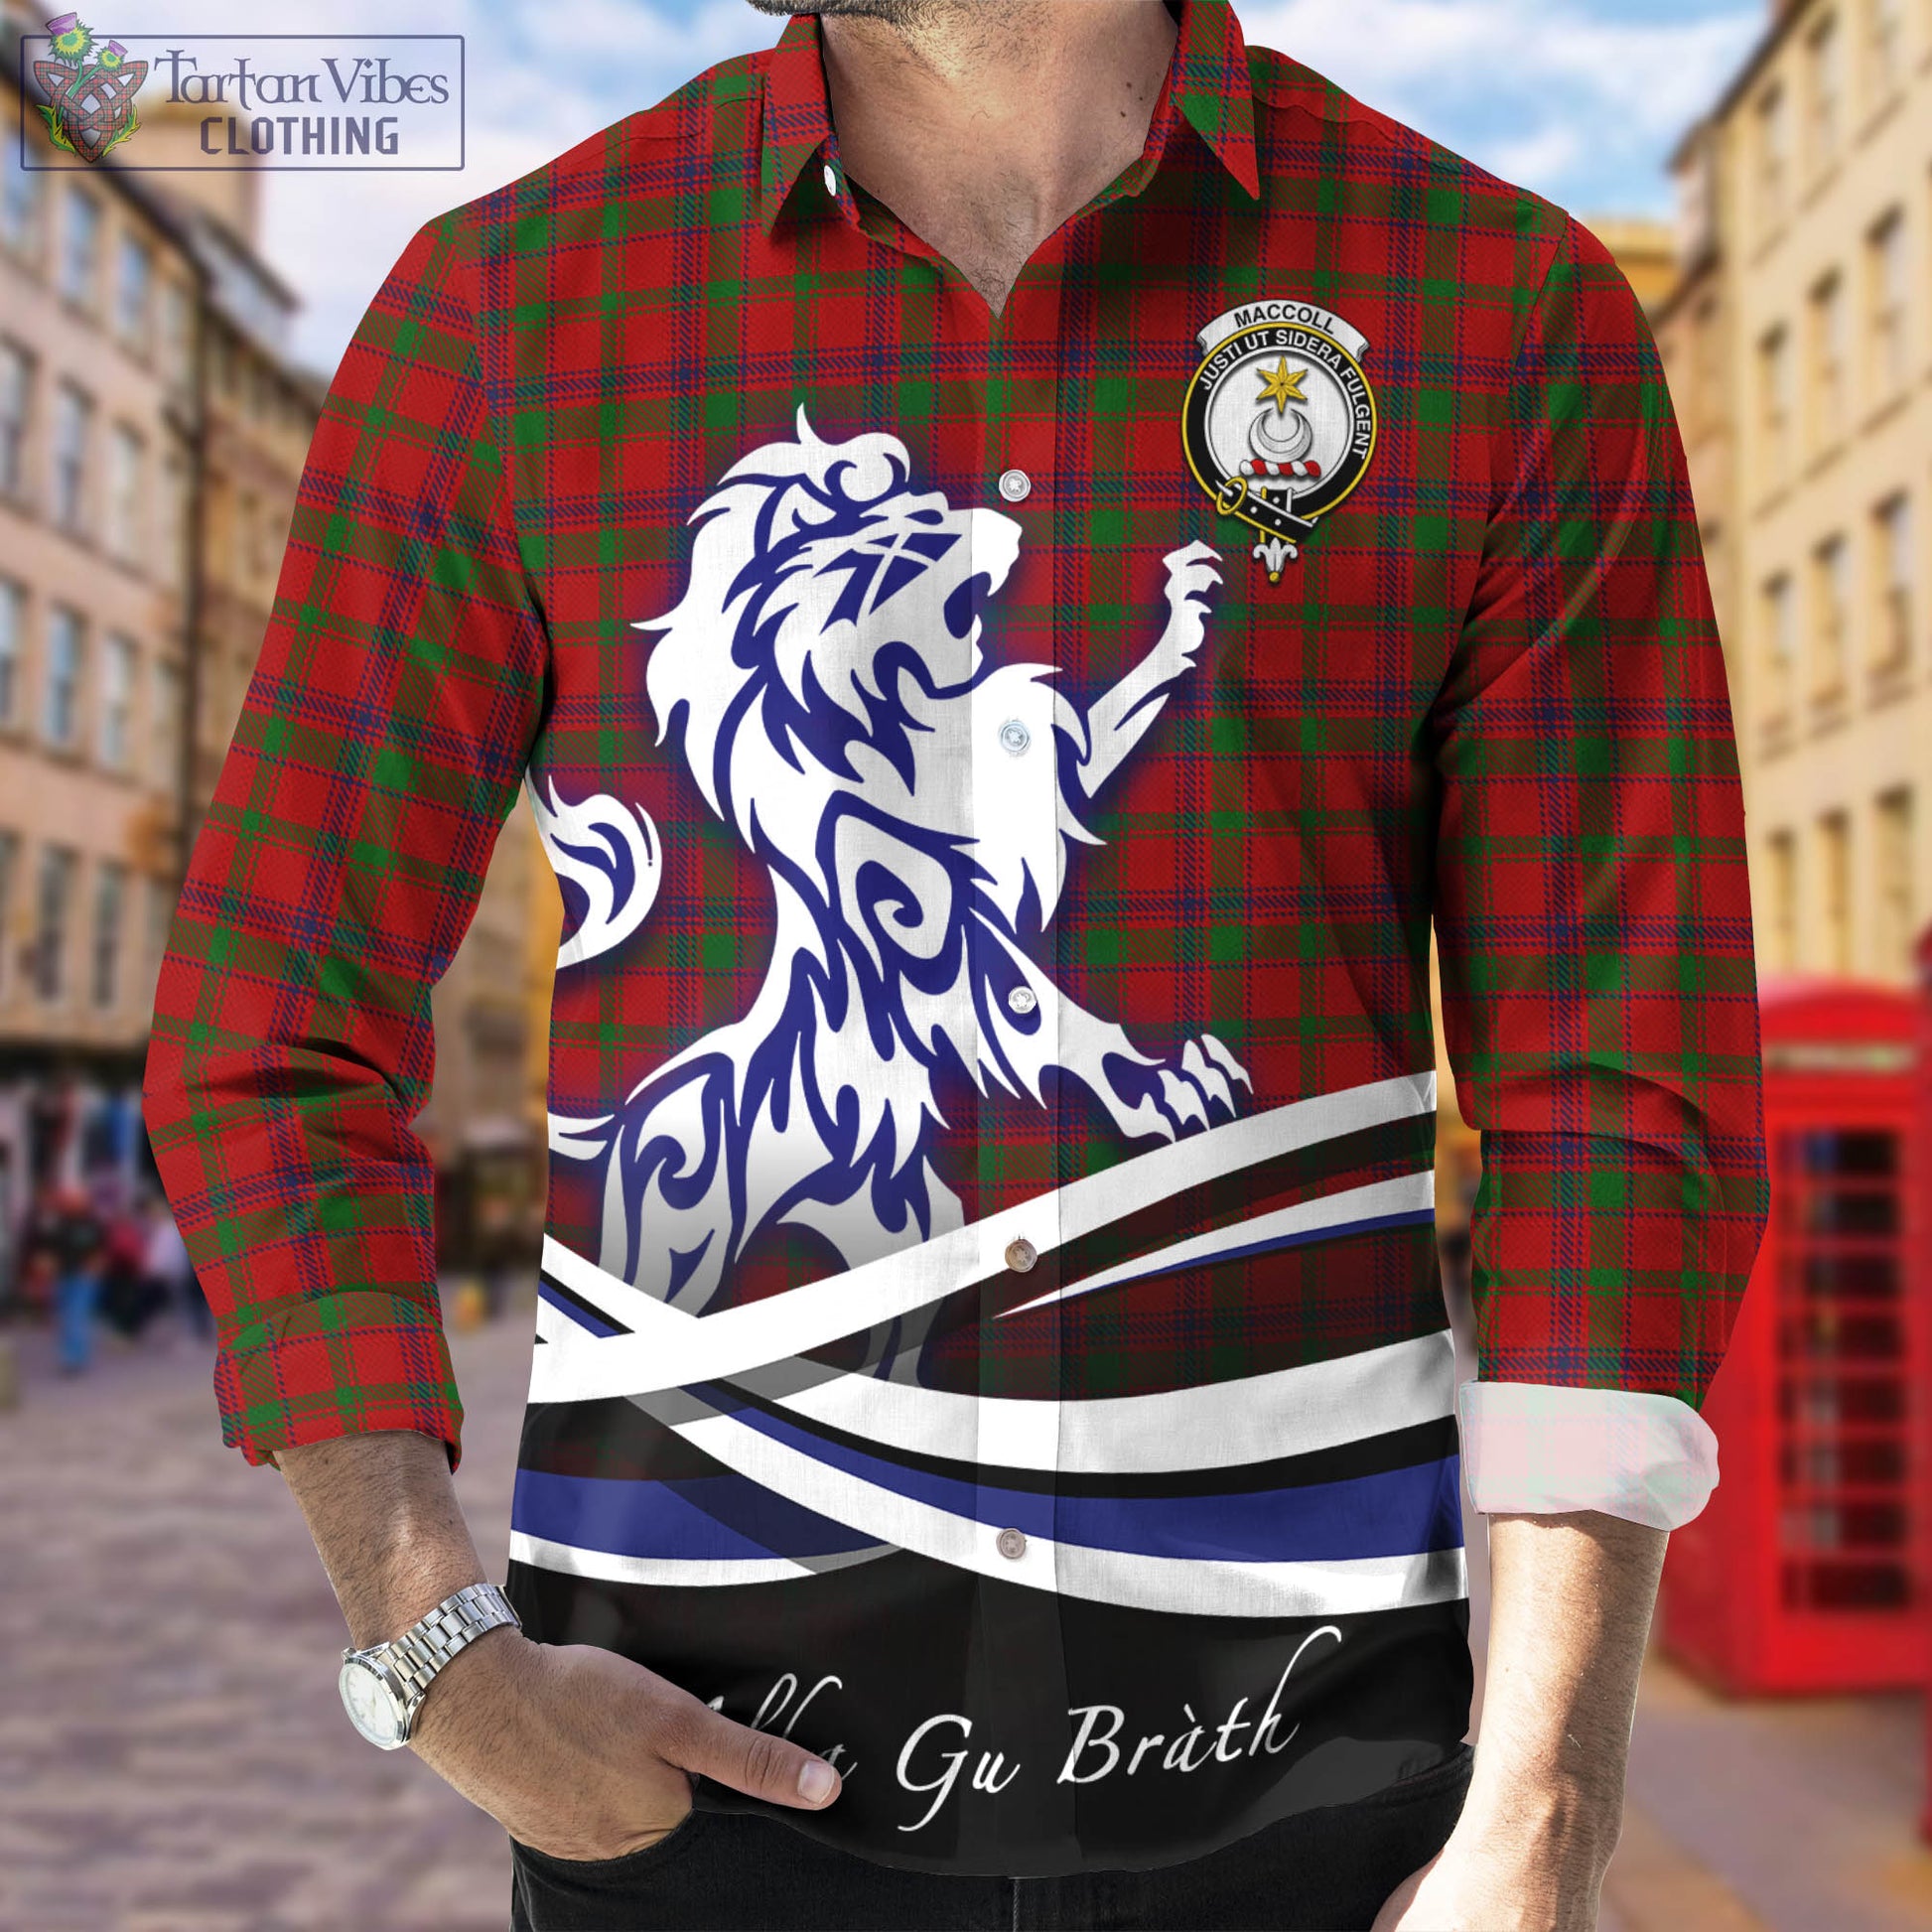 maccoll-tartan-long-sleeve-button-up-shirt-with-alba-gu-brath-regal-lion-emblem